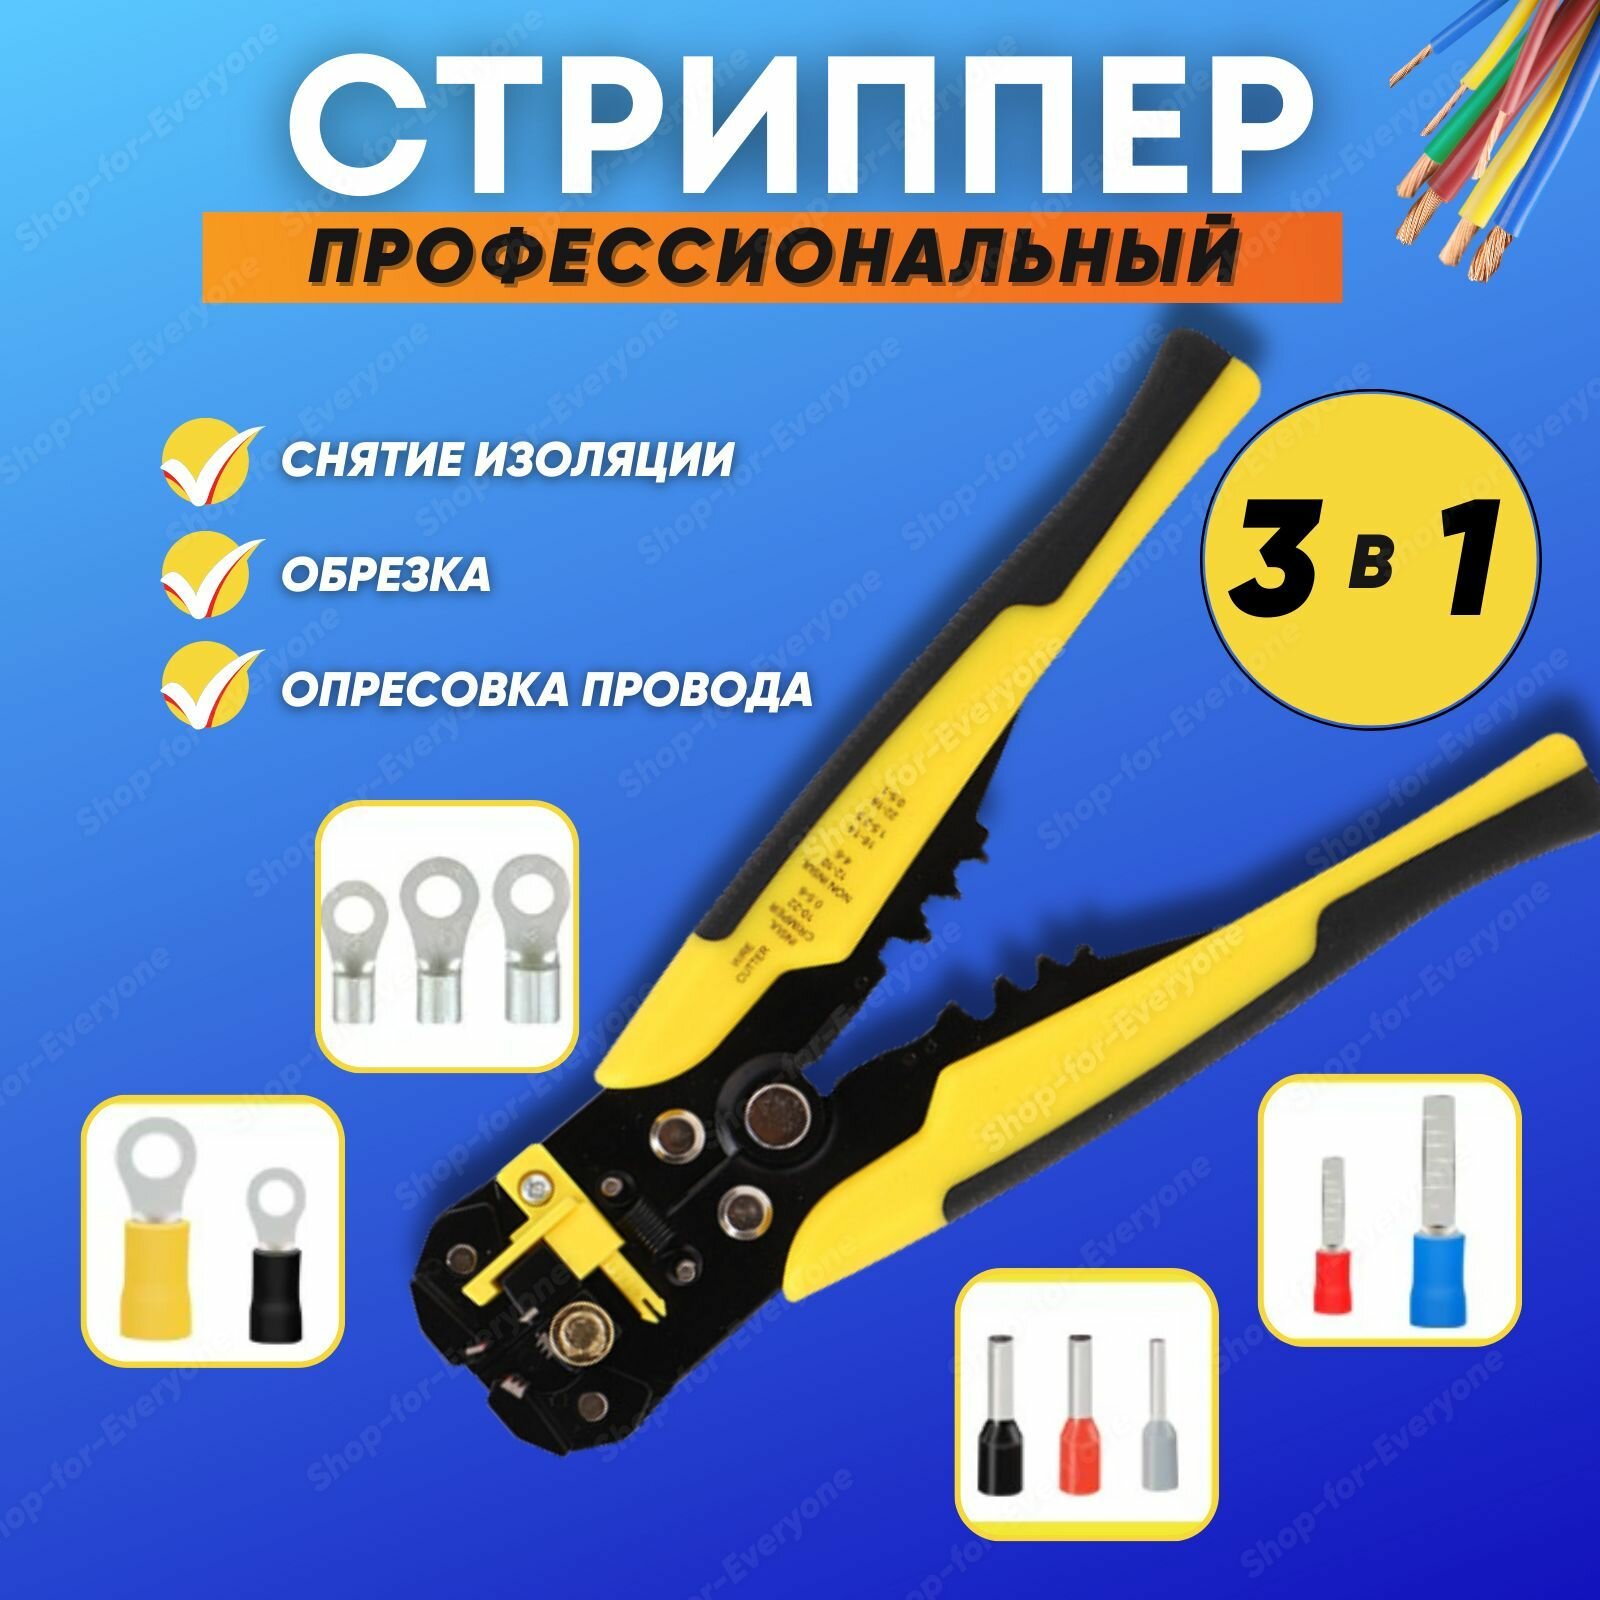 Стриппер 3в1 для снятия изоляции (провода 002-6 кв) Клещи-кримпер обжимные желтые